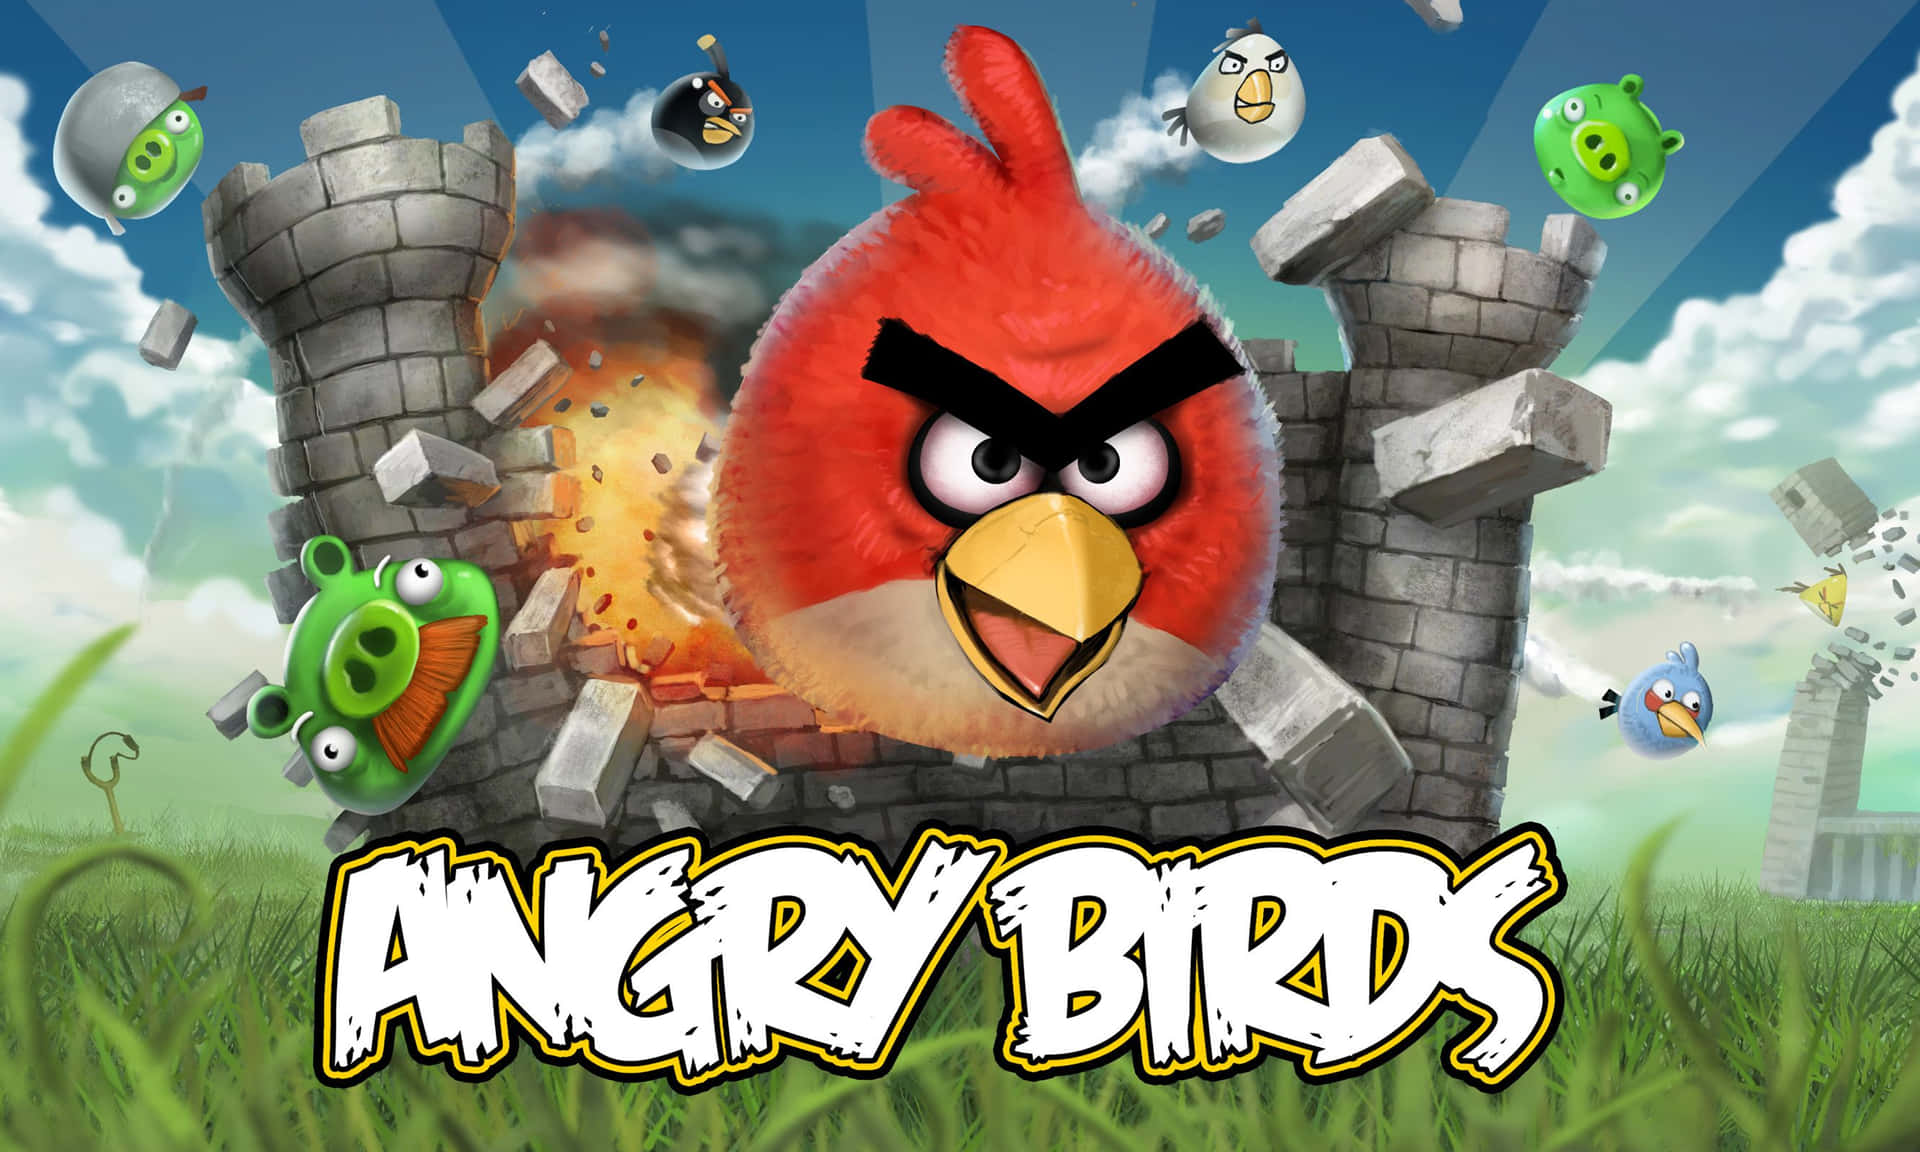 Fondos De Angry Birds